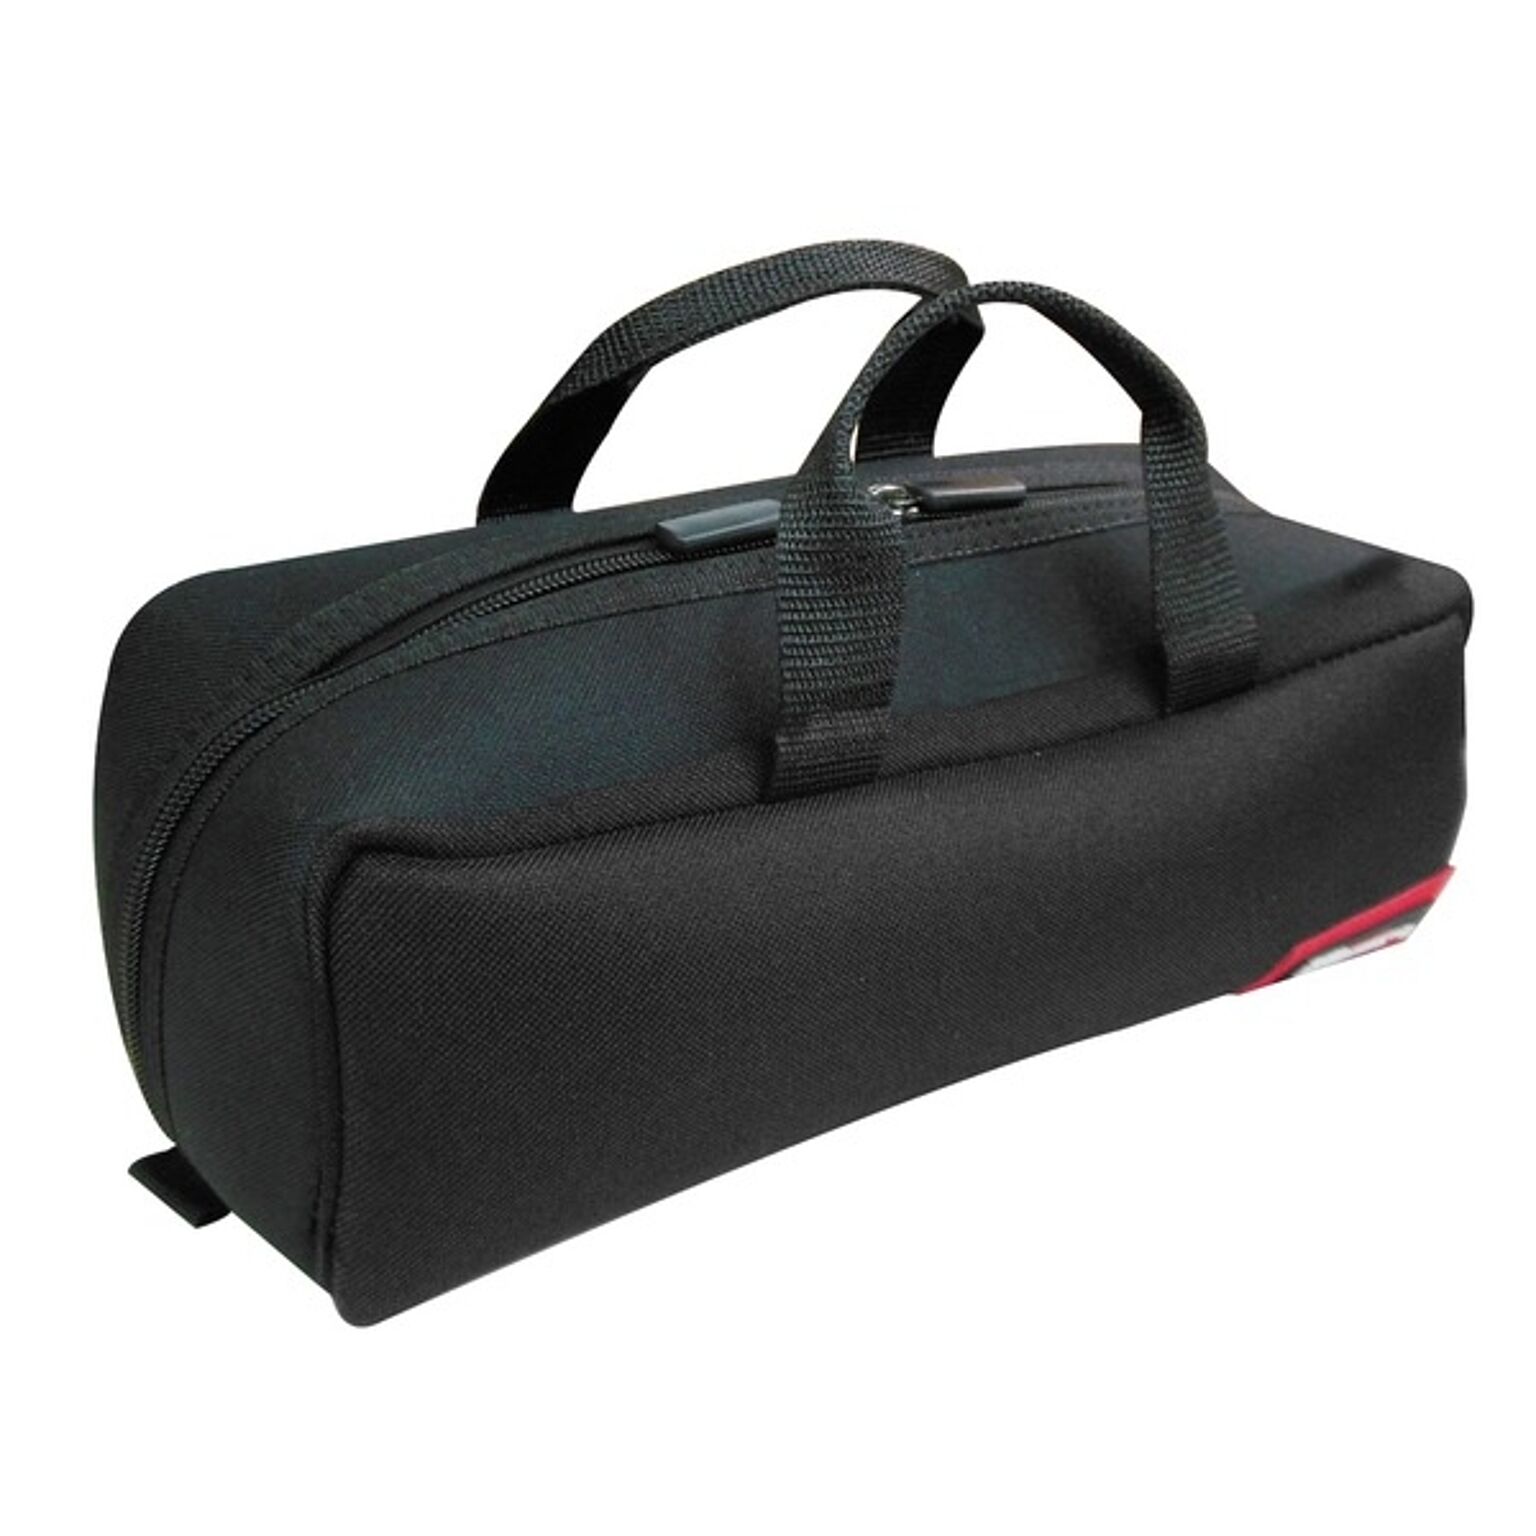 （業務用3個セット）DBLTACT トレジャーボックス（作業バッグ/手提げ鞄） Sサイズ 自立型/軽量 DTQ-S-BK ブラック（黒） 〔収納用具〕【×3セット】